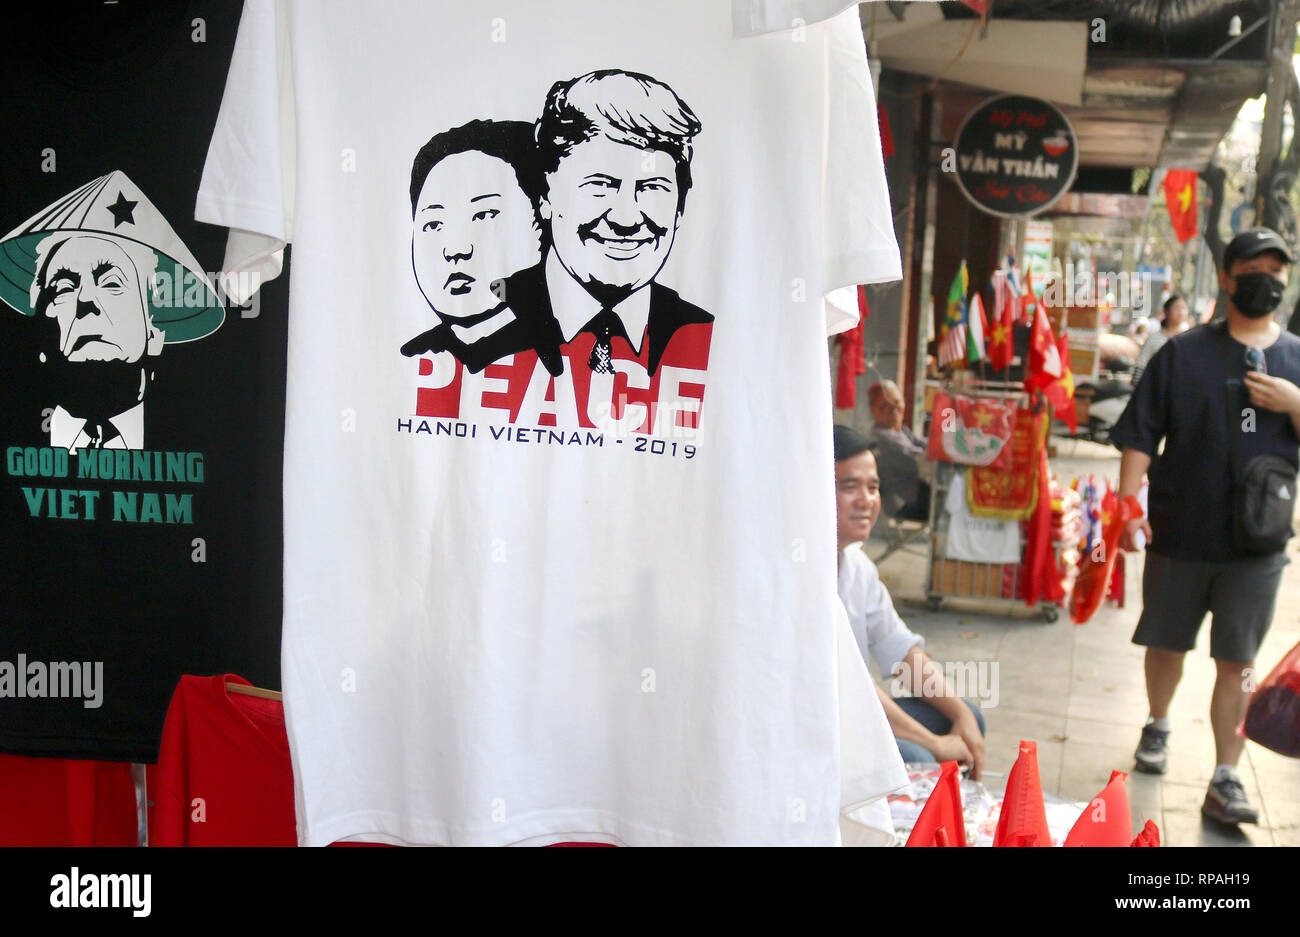 21 febbraio 2019, il Vietnam Hanoi: T-shirt che mostra i ritratti del Presidente americano Trump e nord coreano Kim righello sopra il 'pace' lettering appendere su uno stand di vendita. (A dpa 'Kegelhut-Trump e 'pace' con Kim: T-Shirt sono in Hanoi il racer' Foto: Bac Pham/dpa Foto Stock